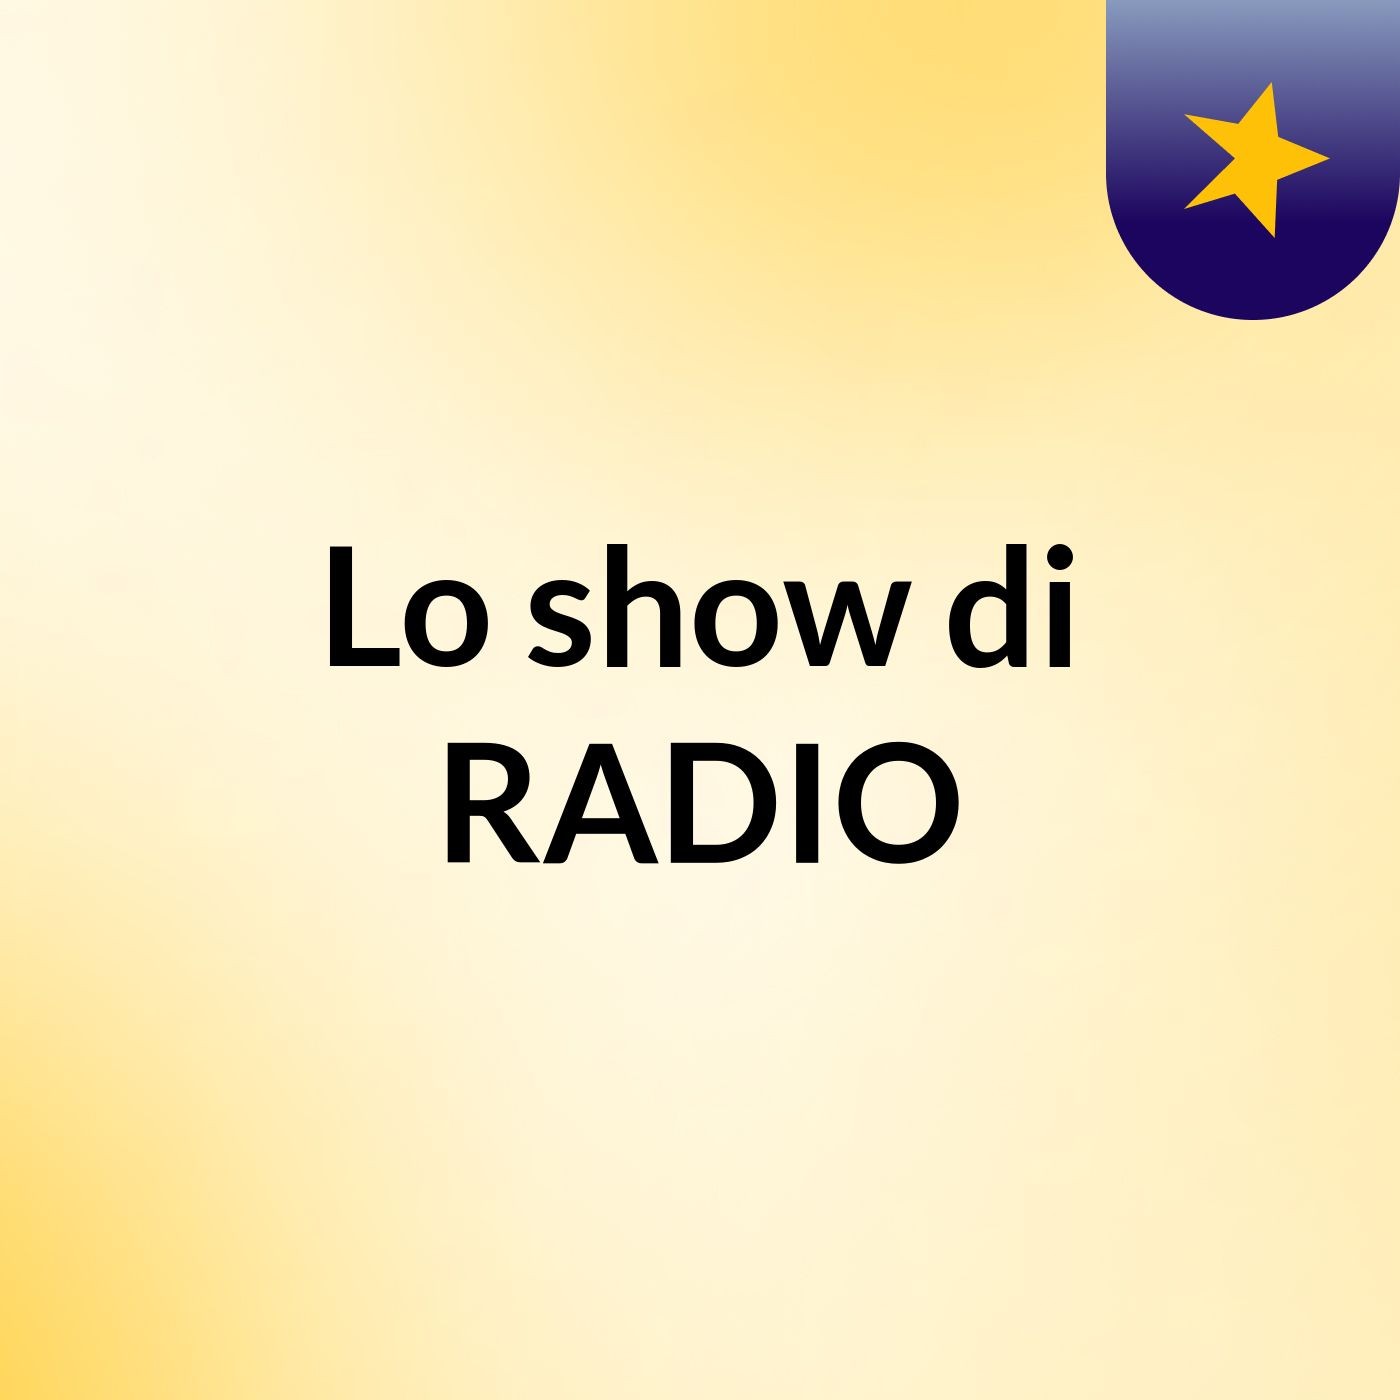 Lo show di RADIO